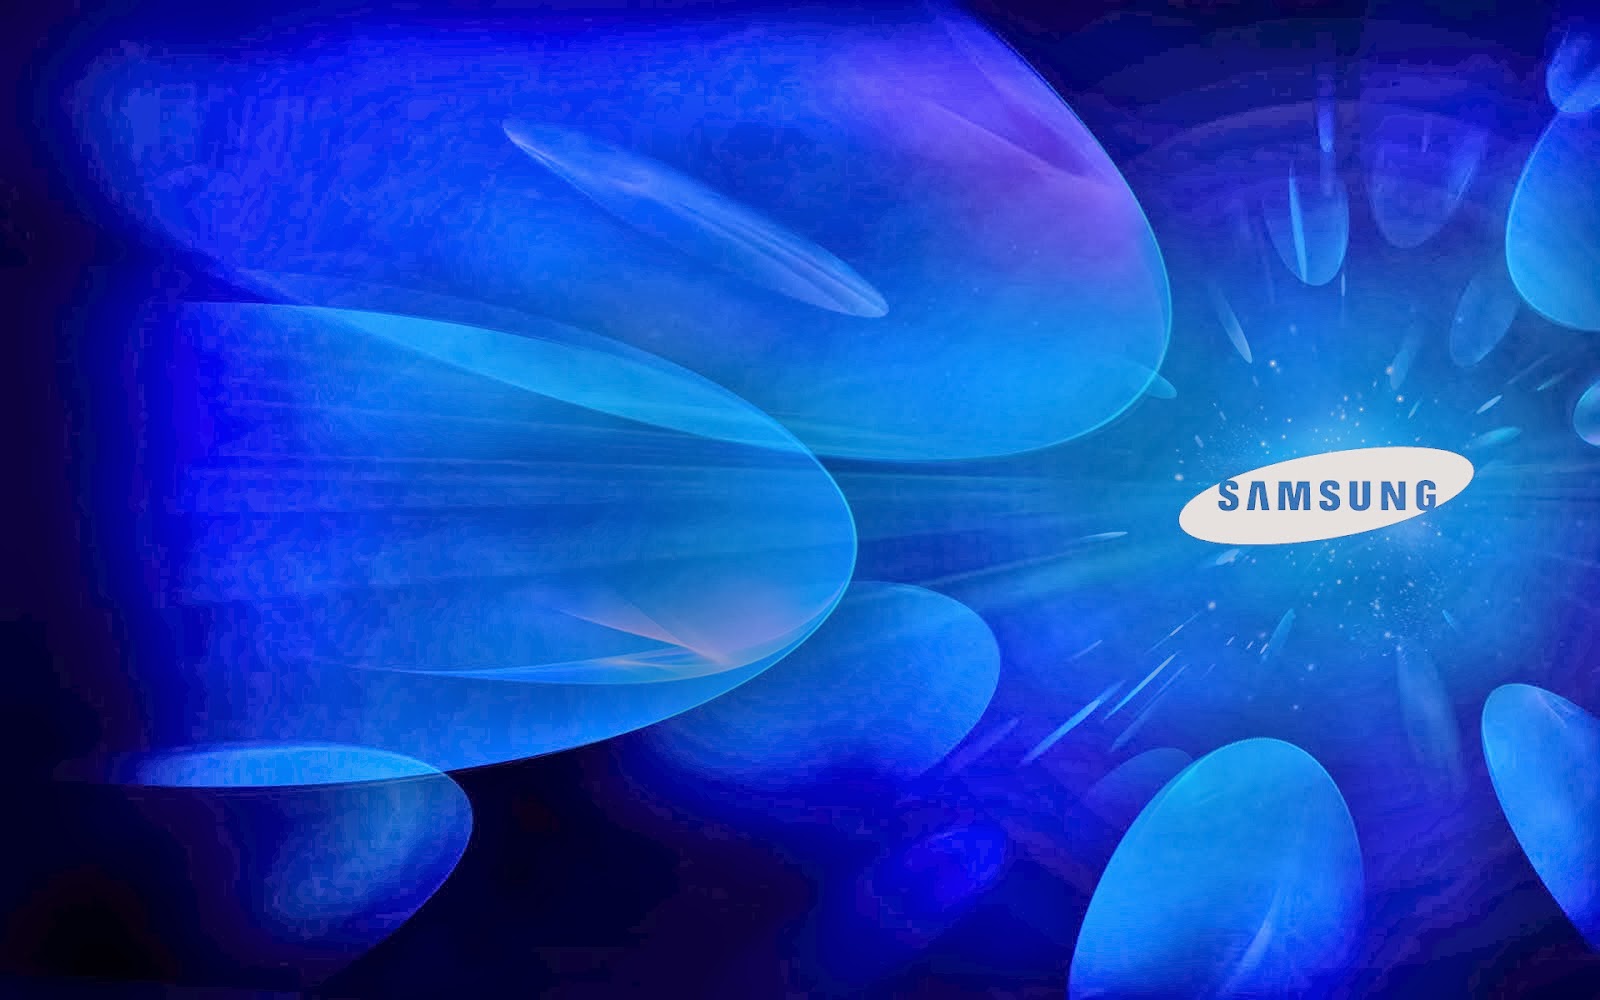 galaxy note 3 fond d'écran hd 1080p,bleu,bleu électrique,police de caractère,ciel,conception